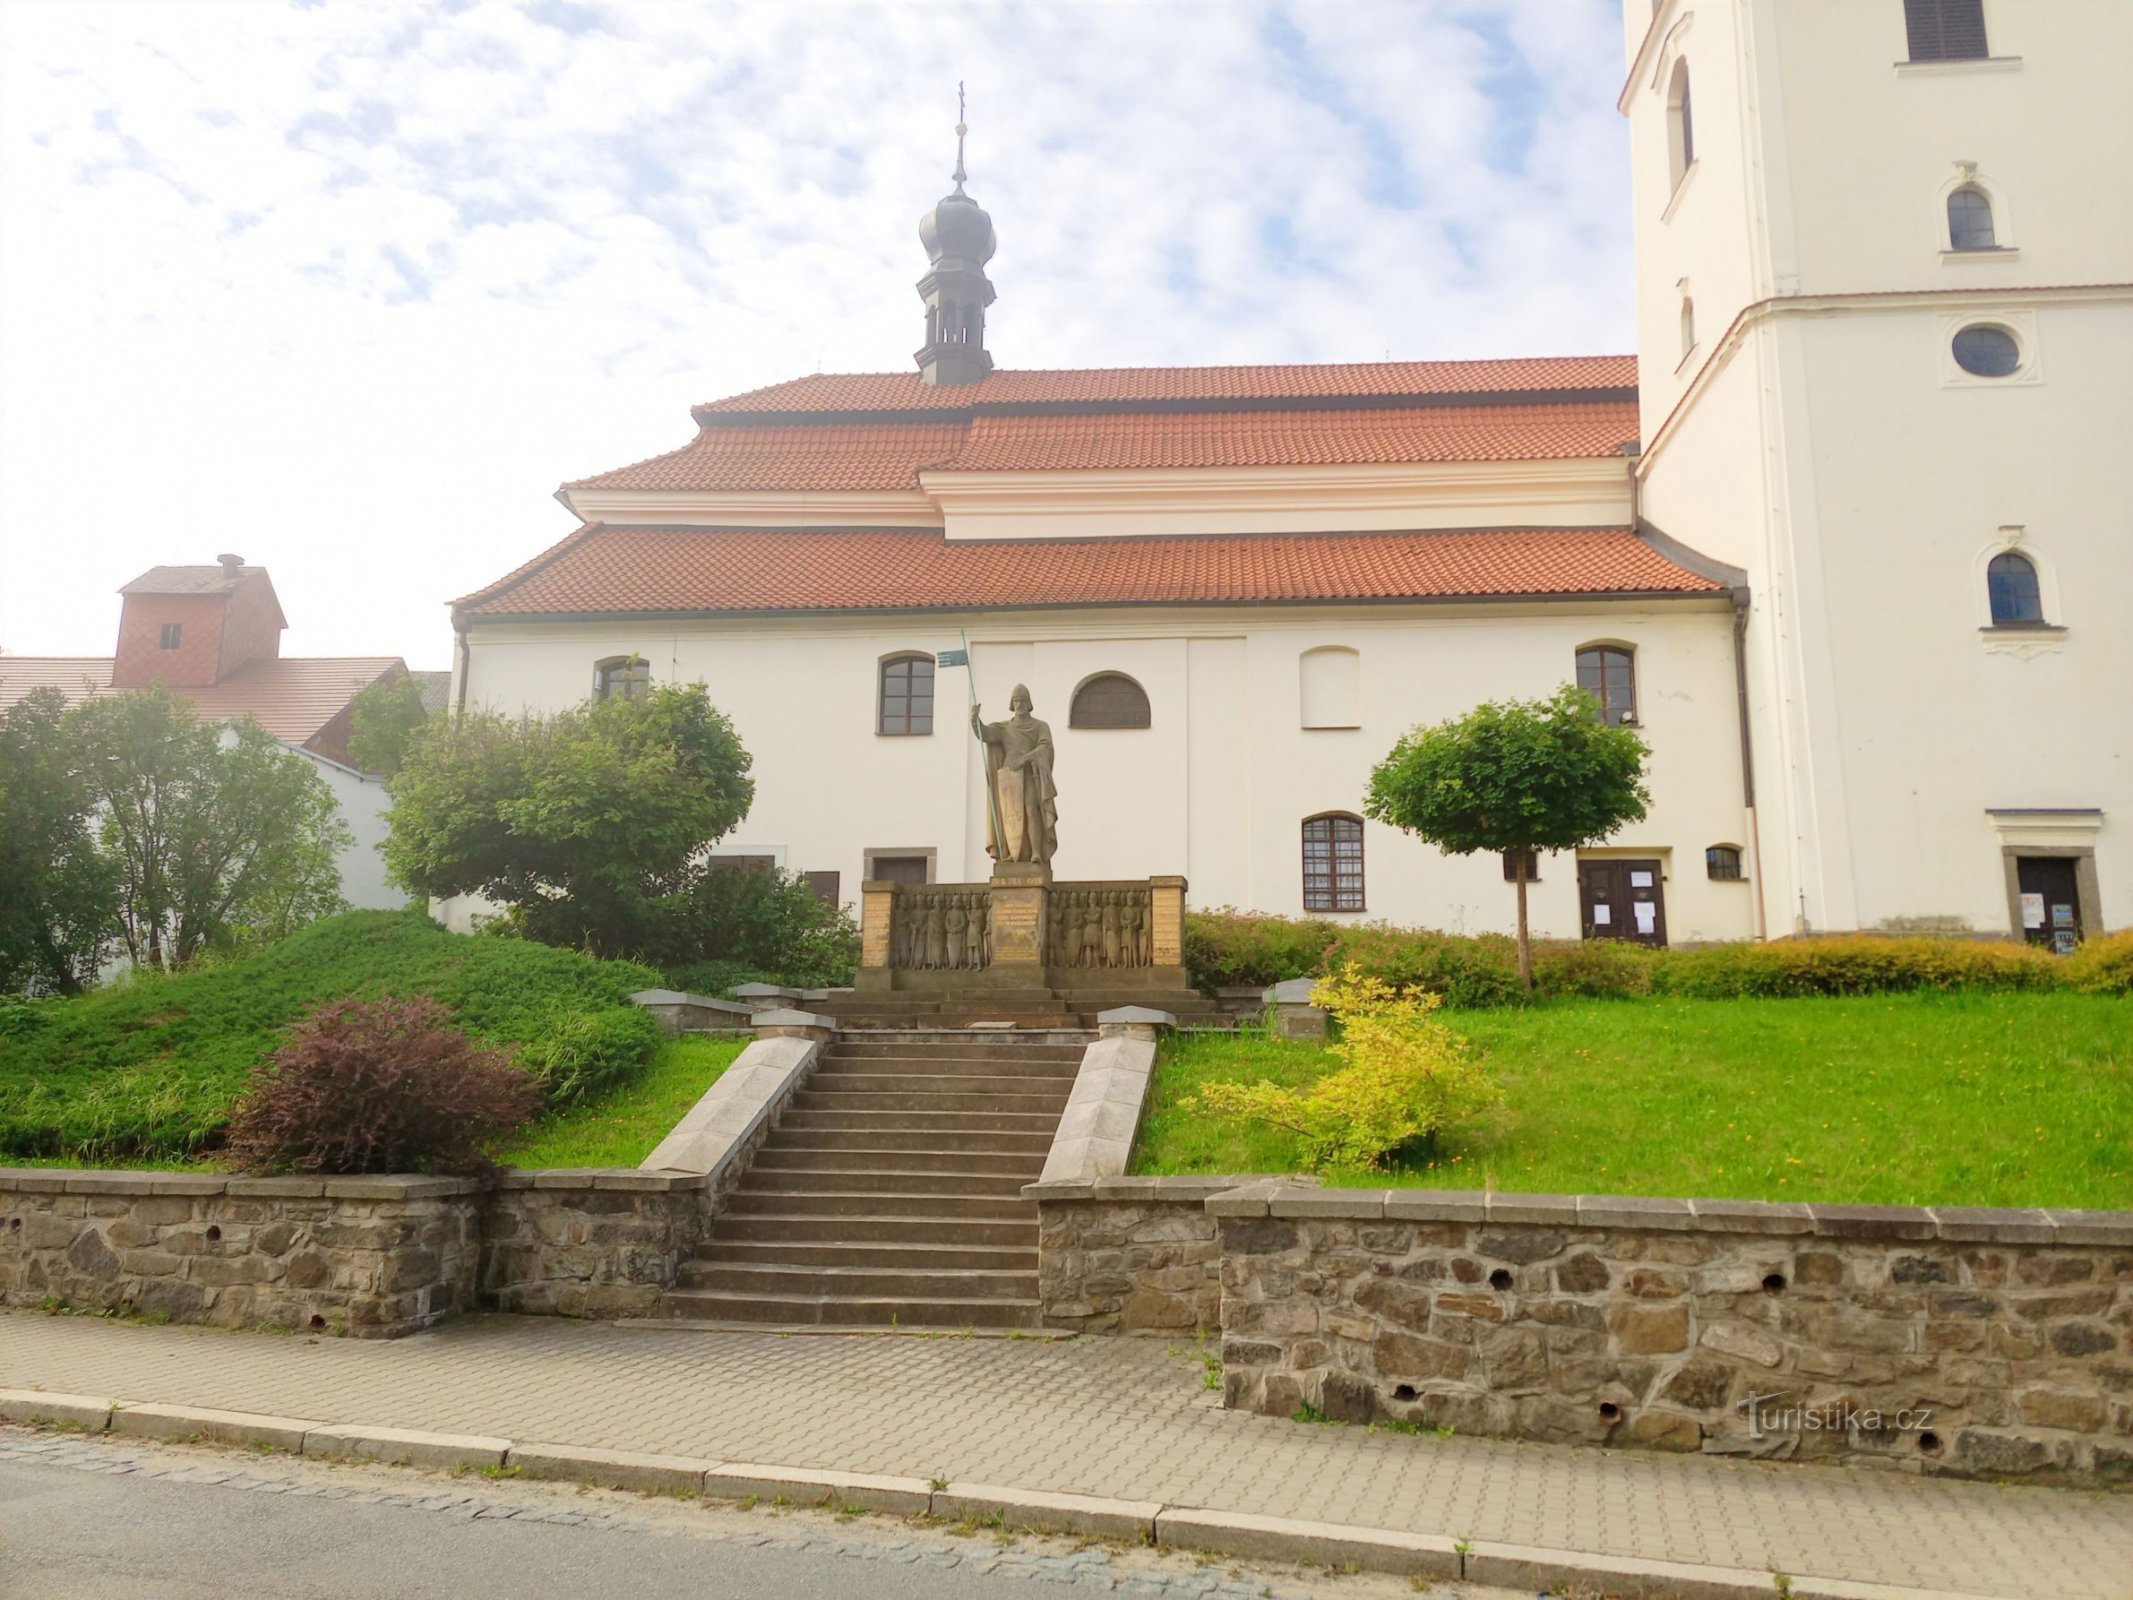 1. Statuia Sf. Wenceslas în fața bisericii cu același nume din Votice